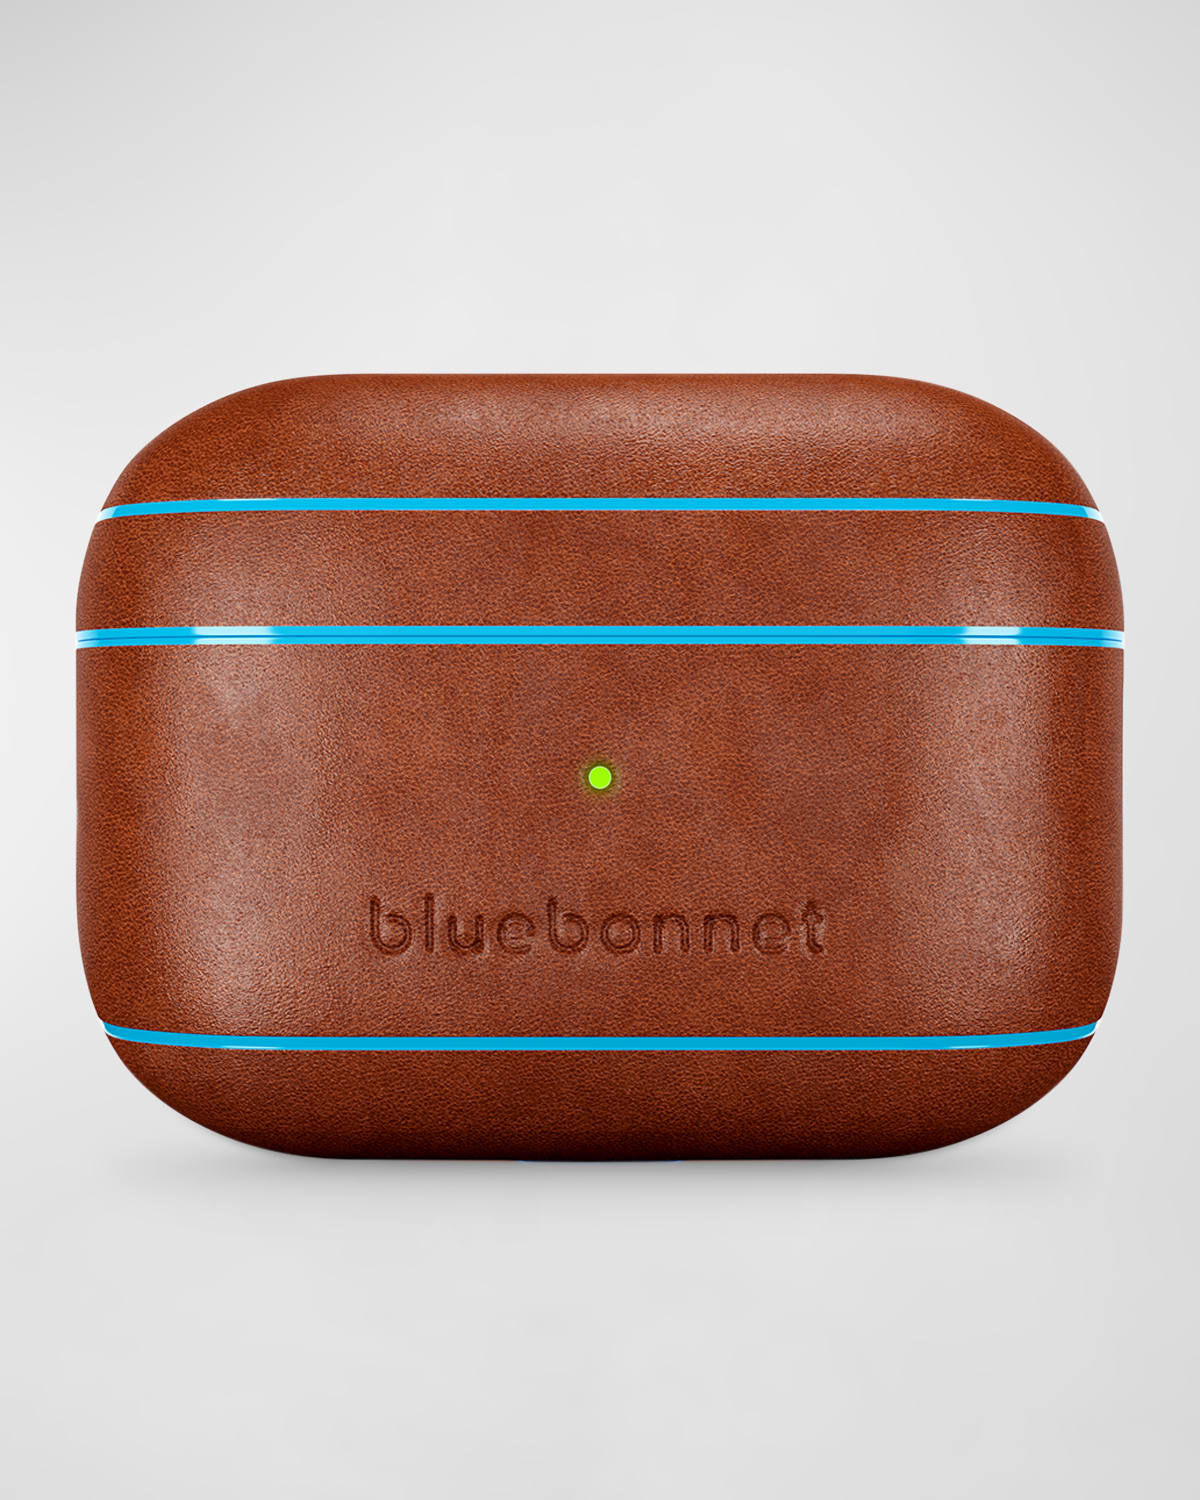 Bluebonnet Leather AirPods Pro 2 Case